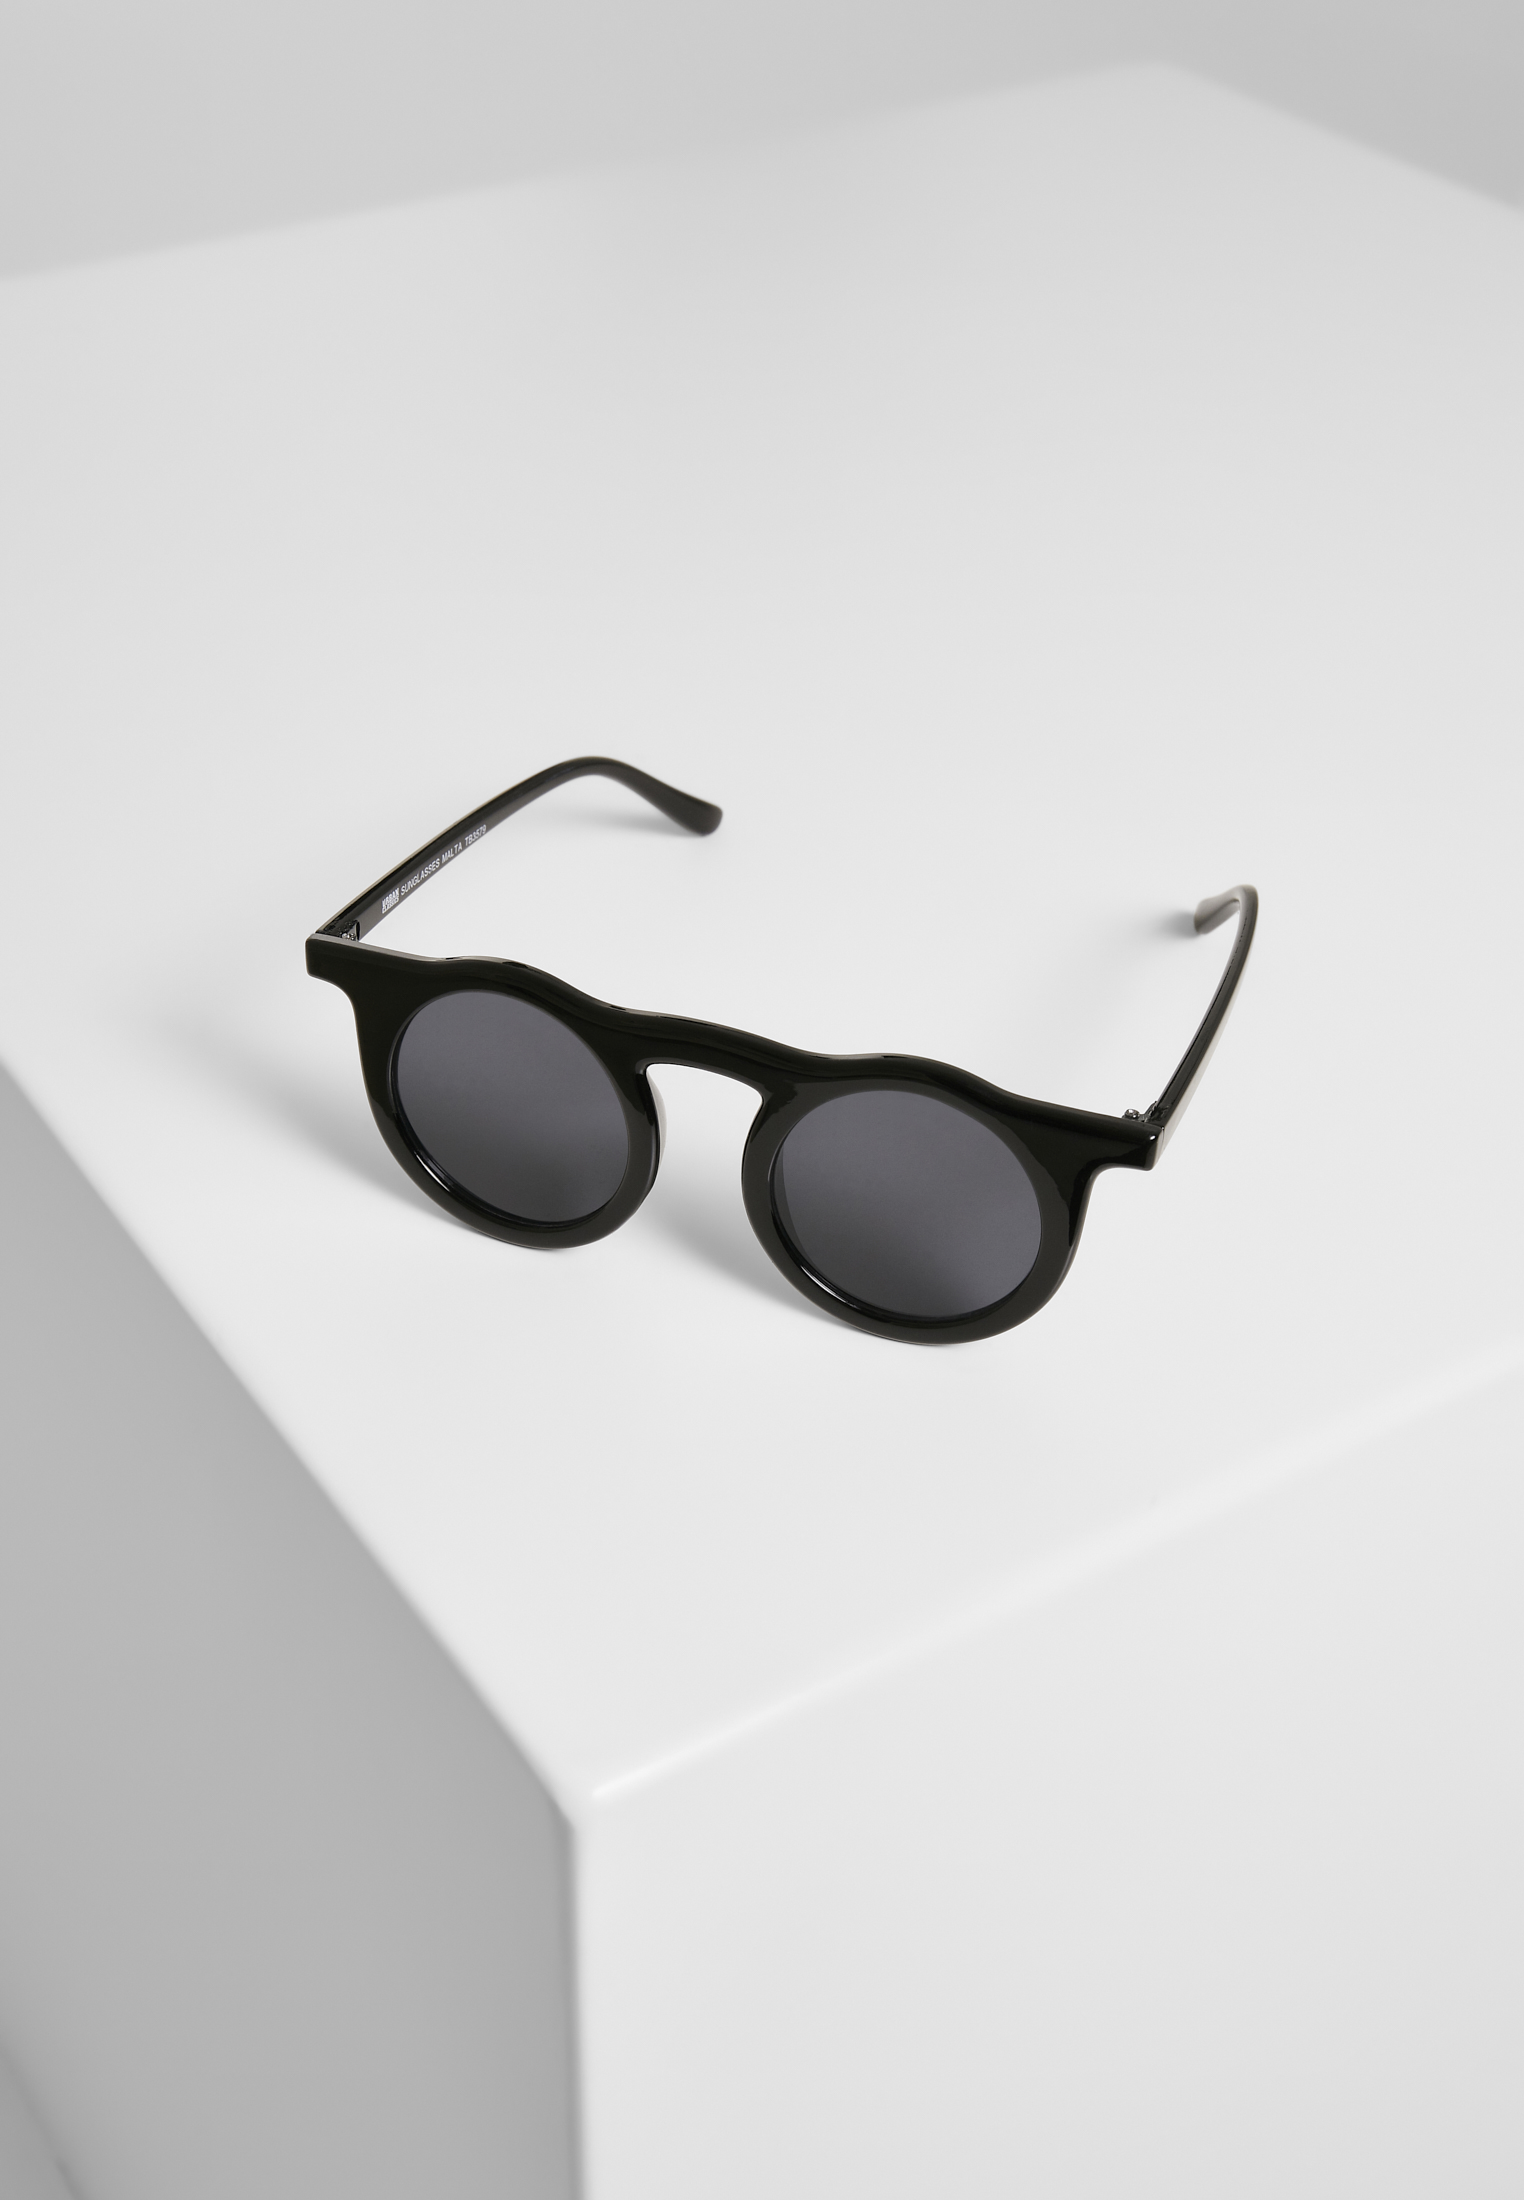 Sonnenbrillen Sunglasses Malta in Farbe blk/blk